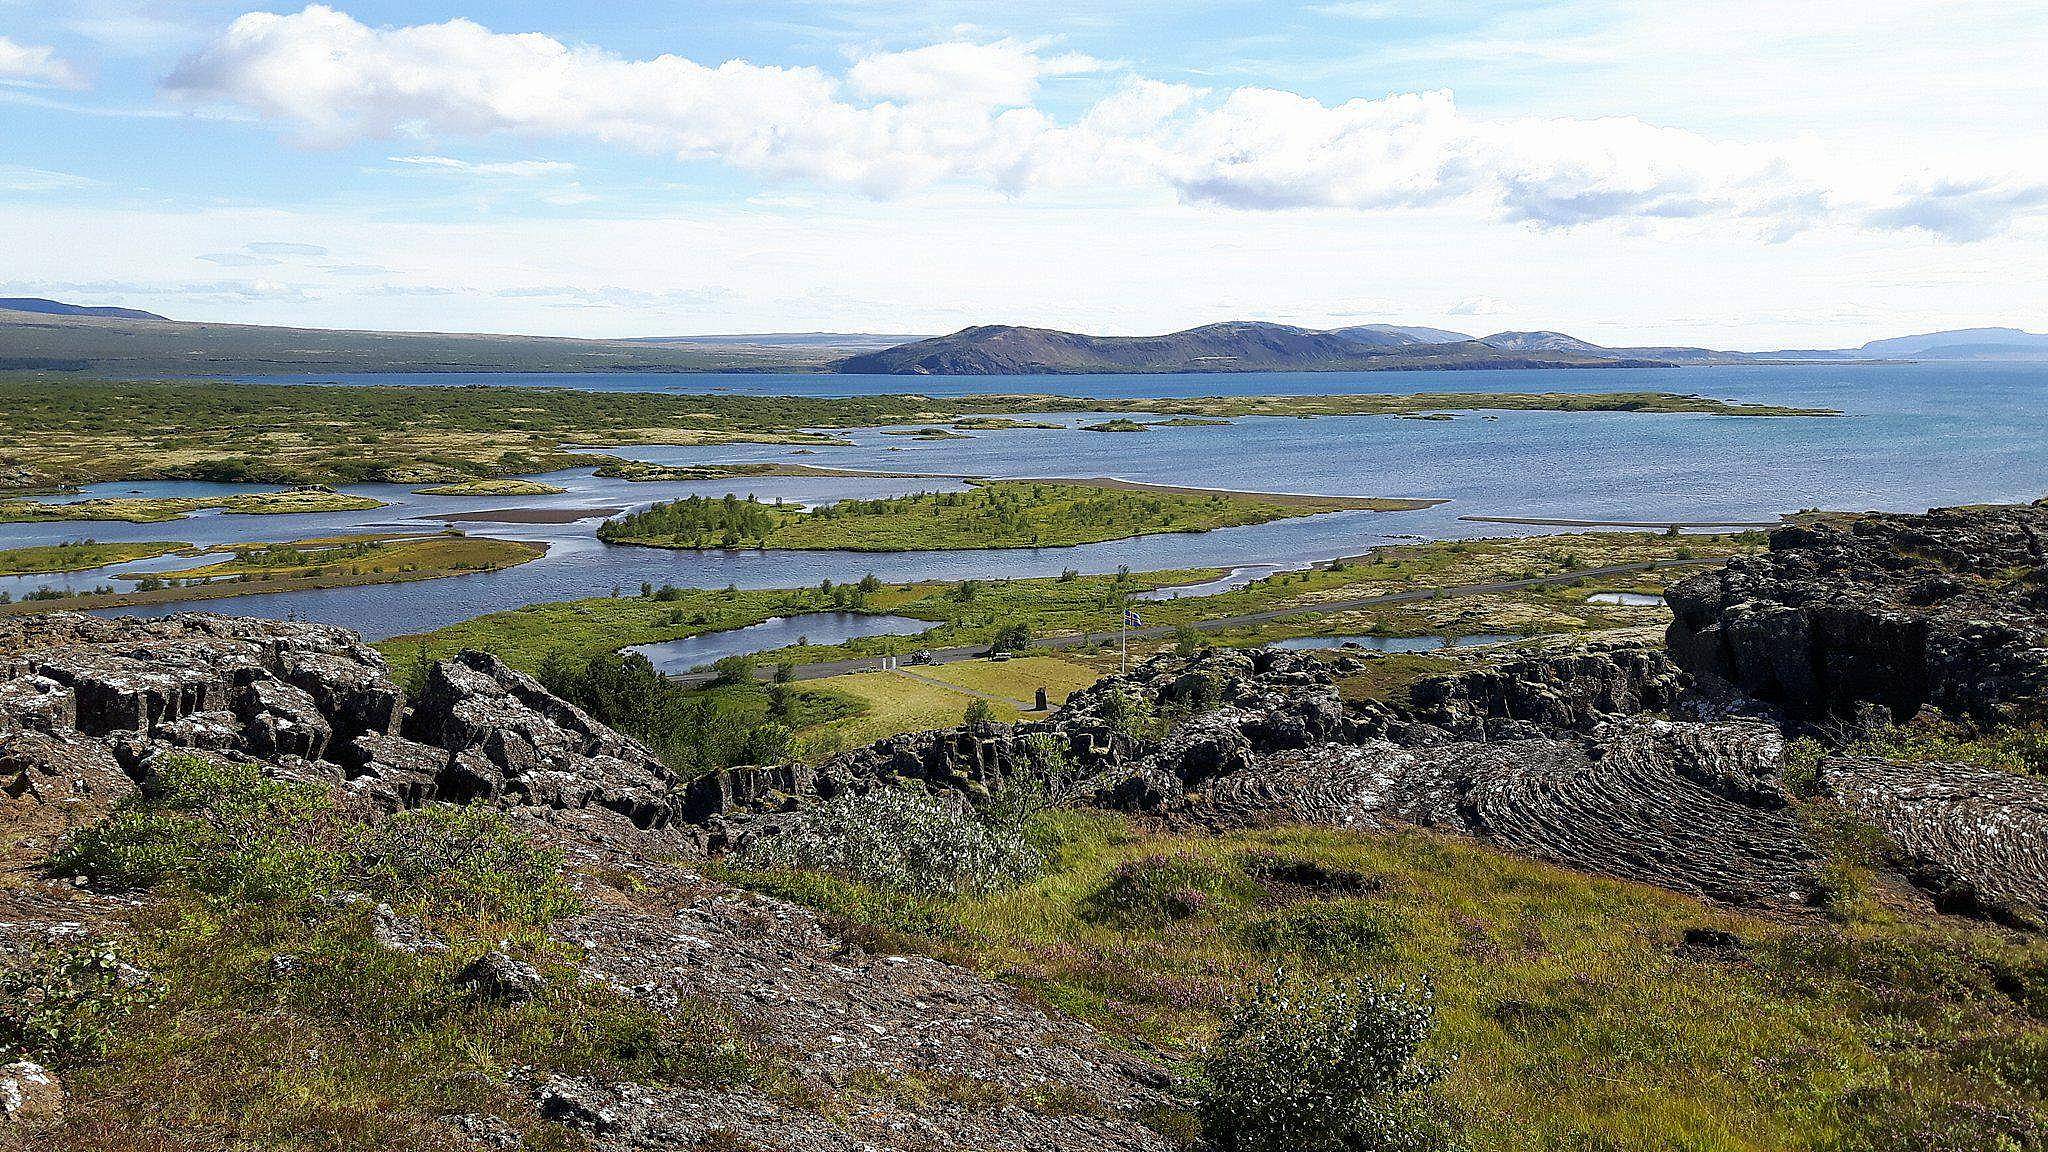 Abenteuer ohne Stress: Entdecken Sie die Naturperlen rund um Reykjavik!